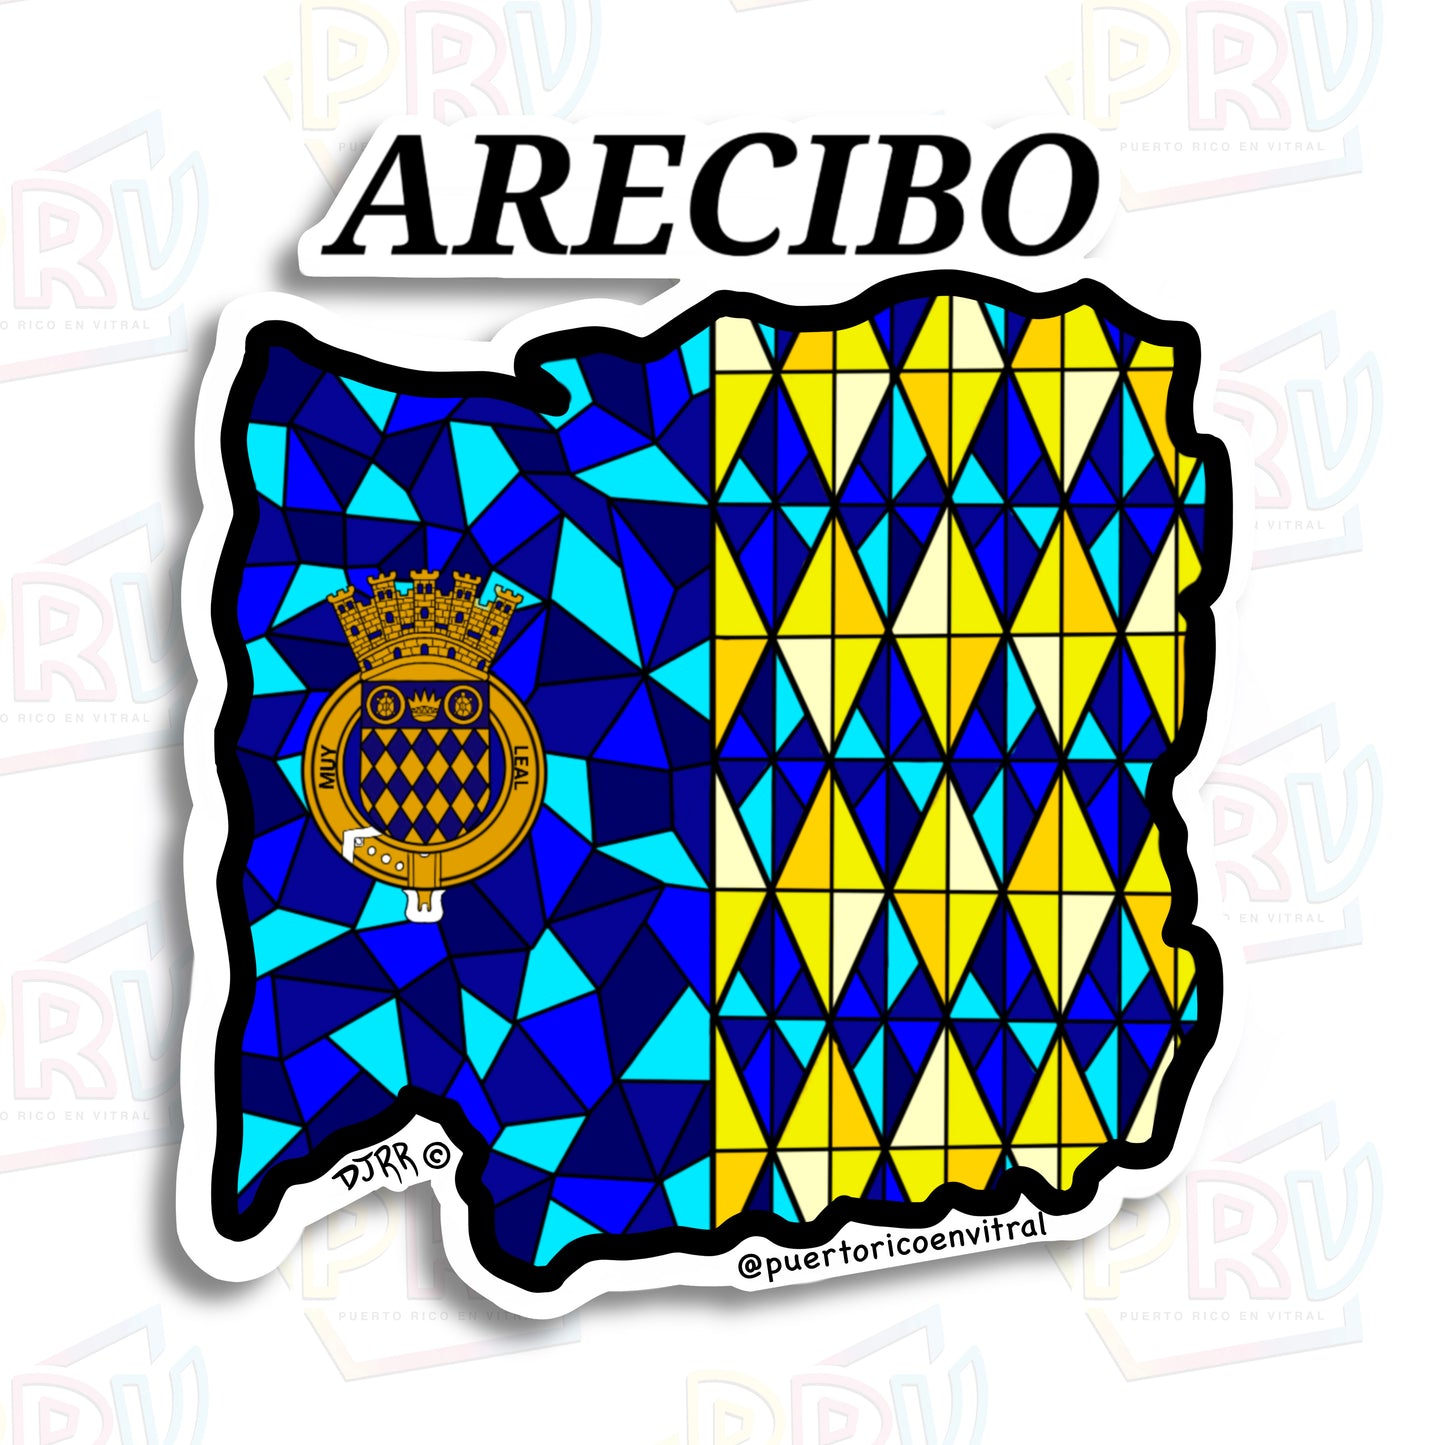 Arecibo PR (Sticker)